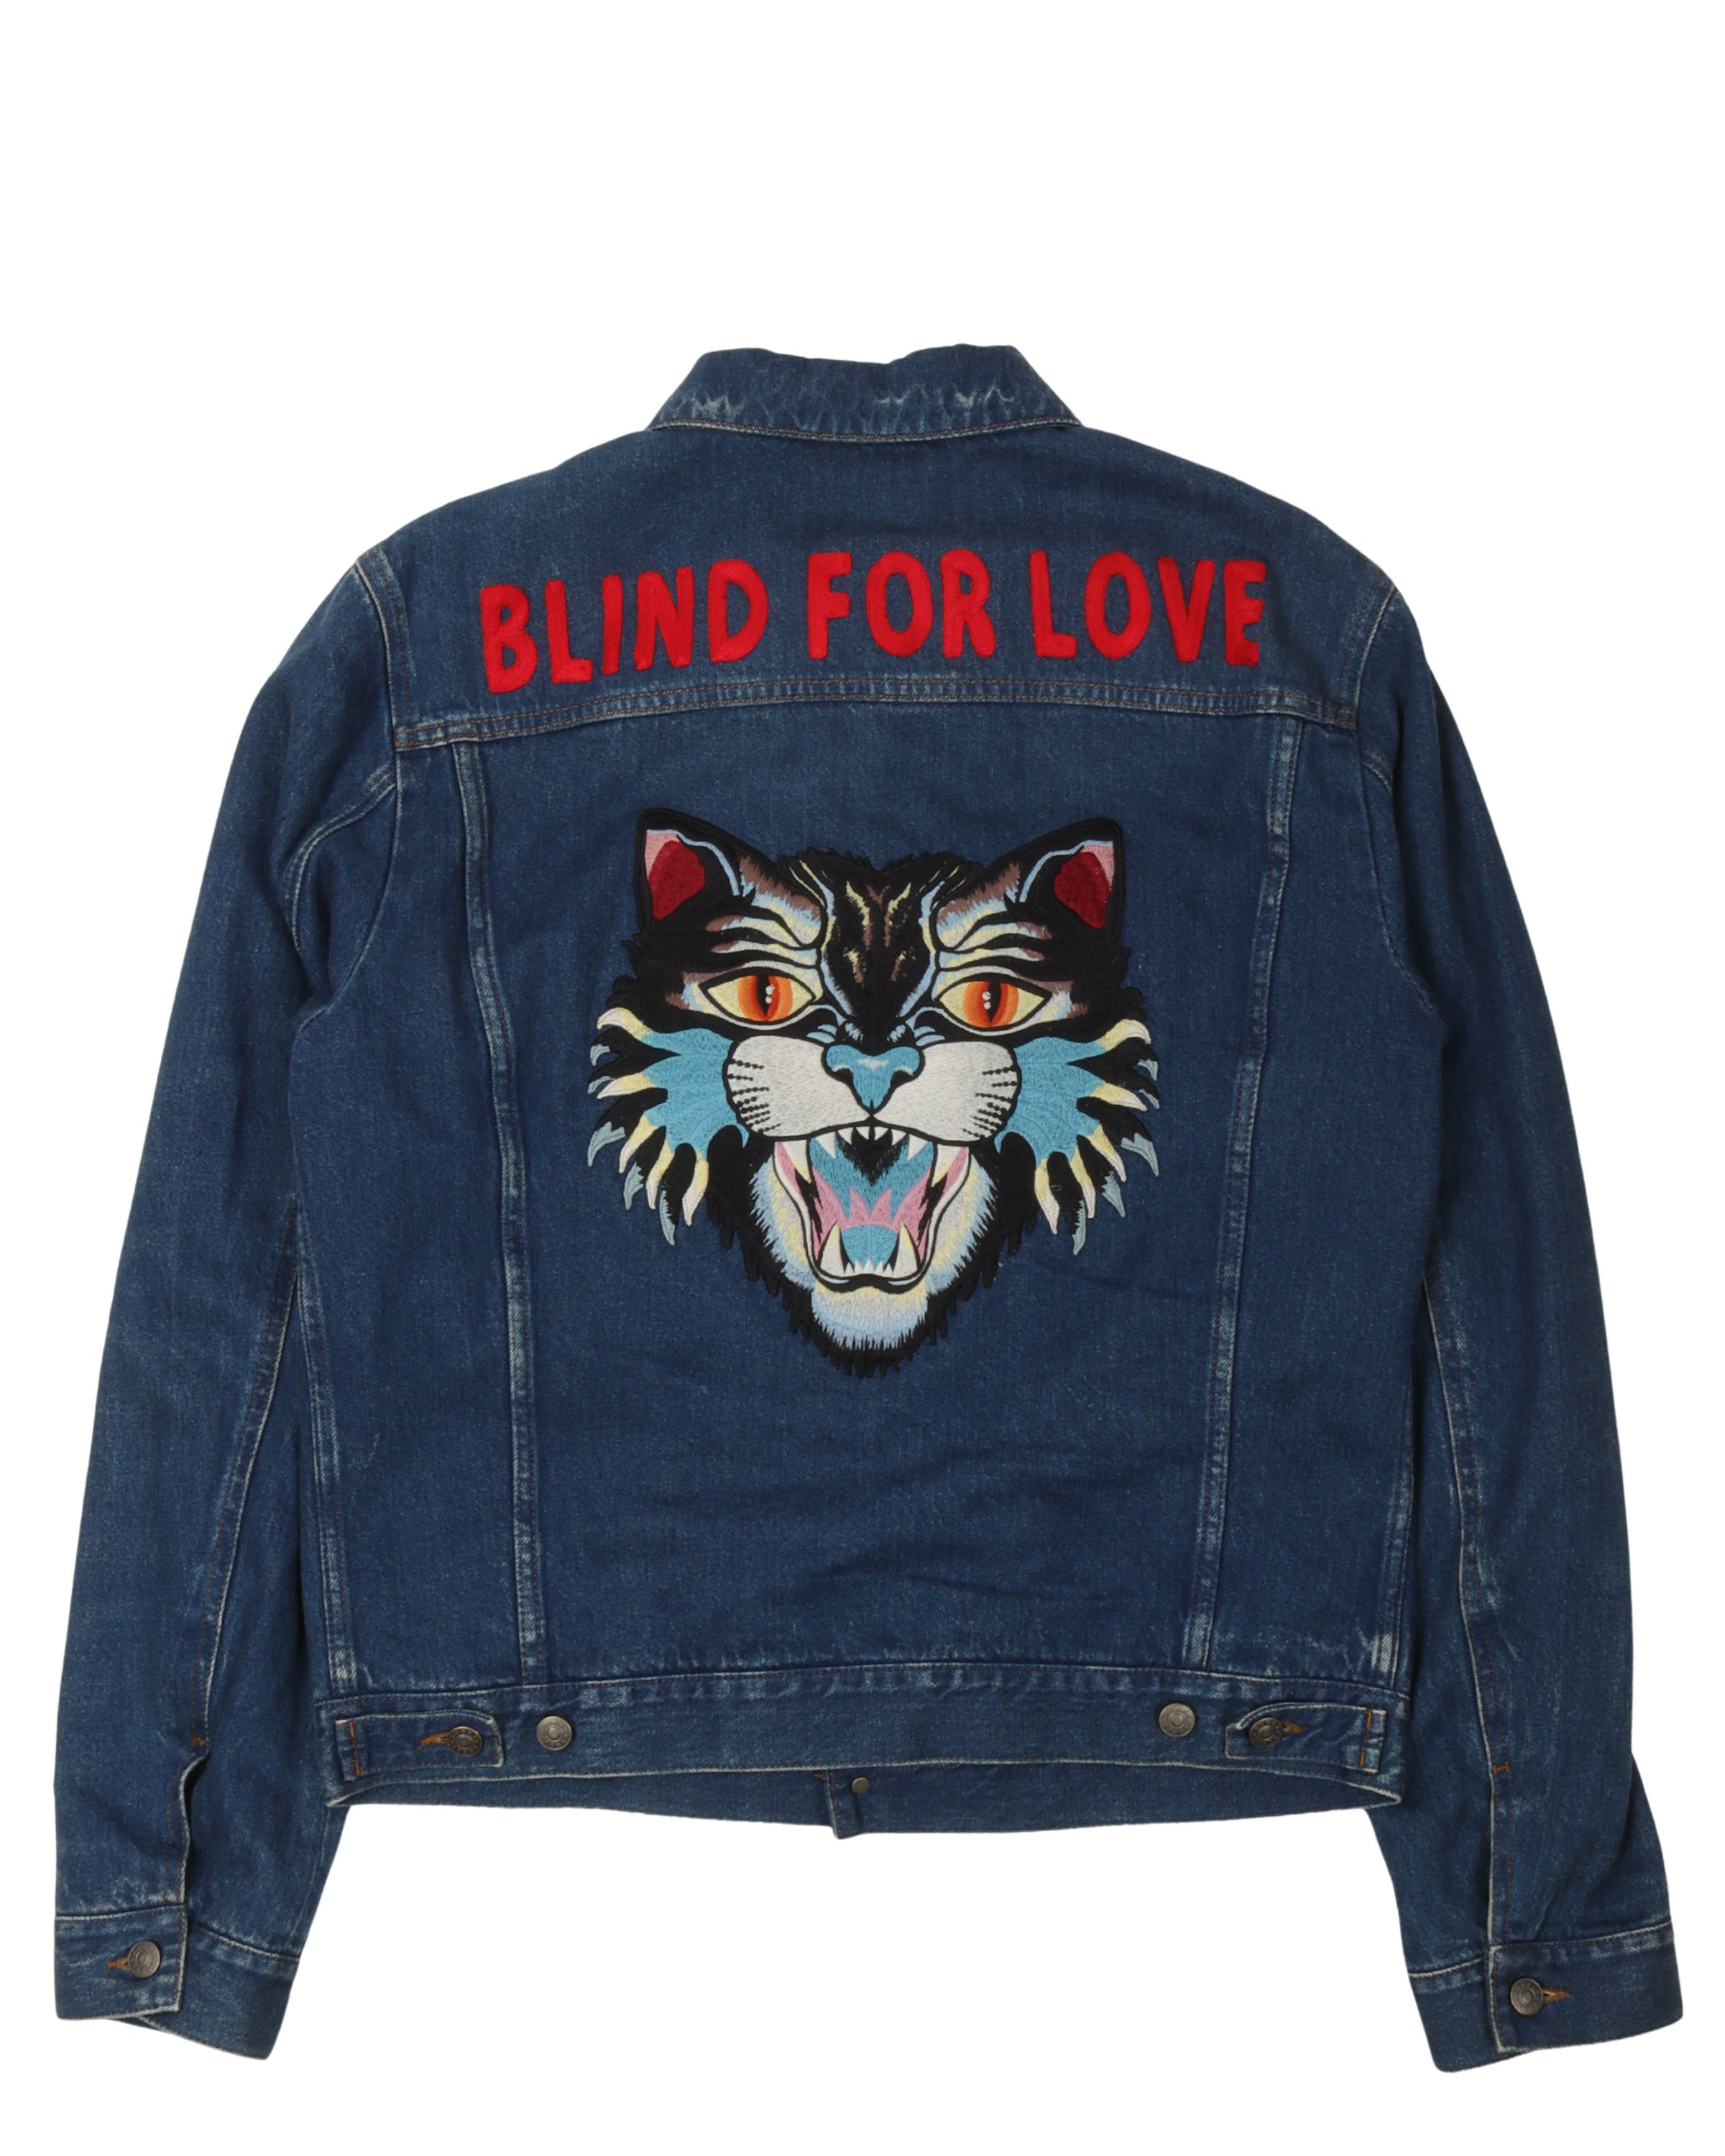 "Blind For Love" Embroidered Denim Jacket